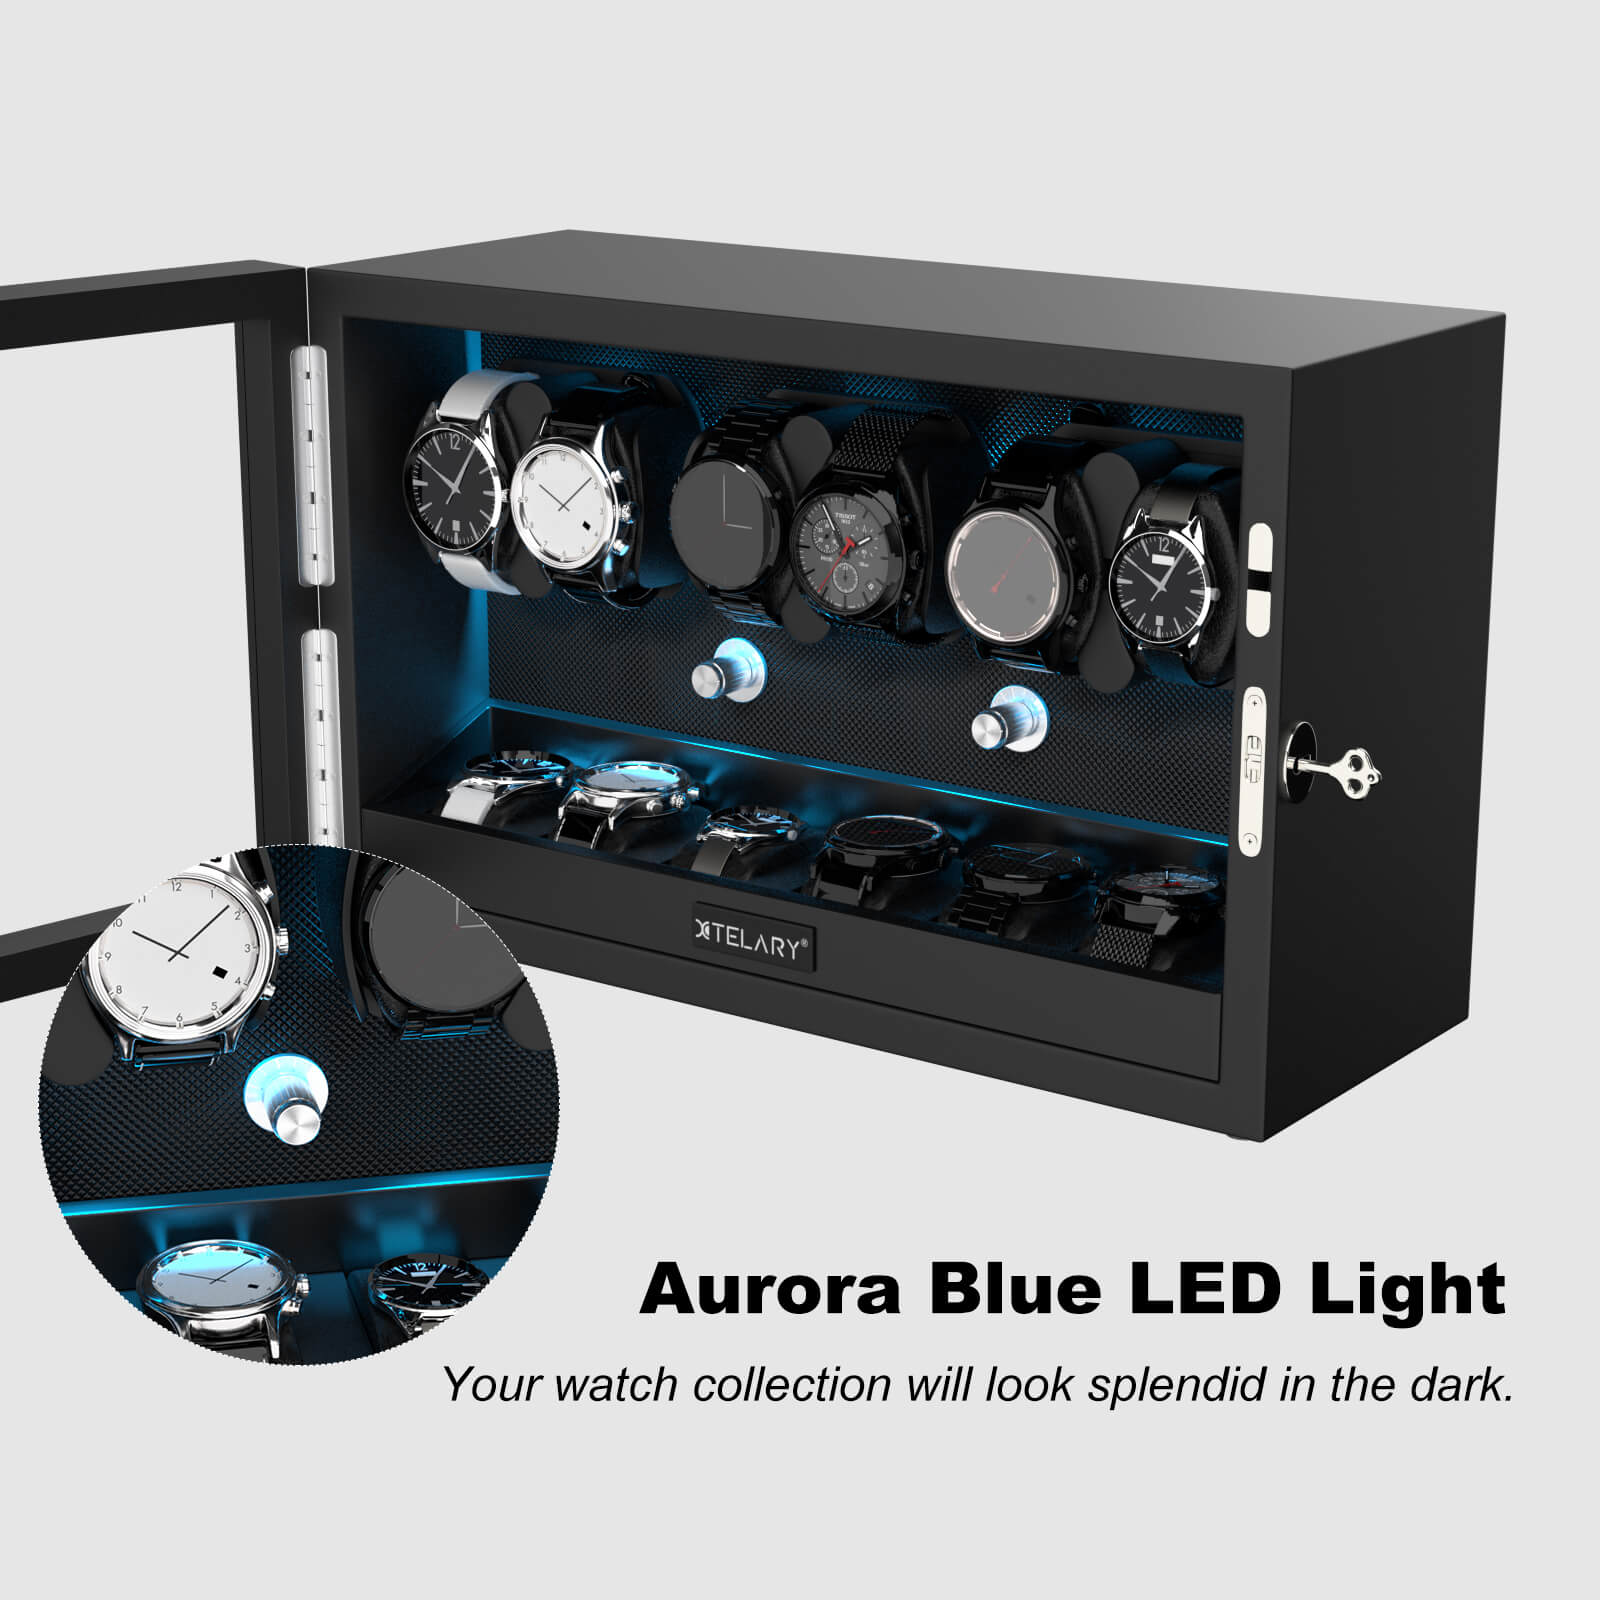 6 Remontoirs de Montres pour Montres Automatiques avec 6 Rangements Supplémentaires Lumière LED Bleue Aurora - Noir